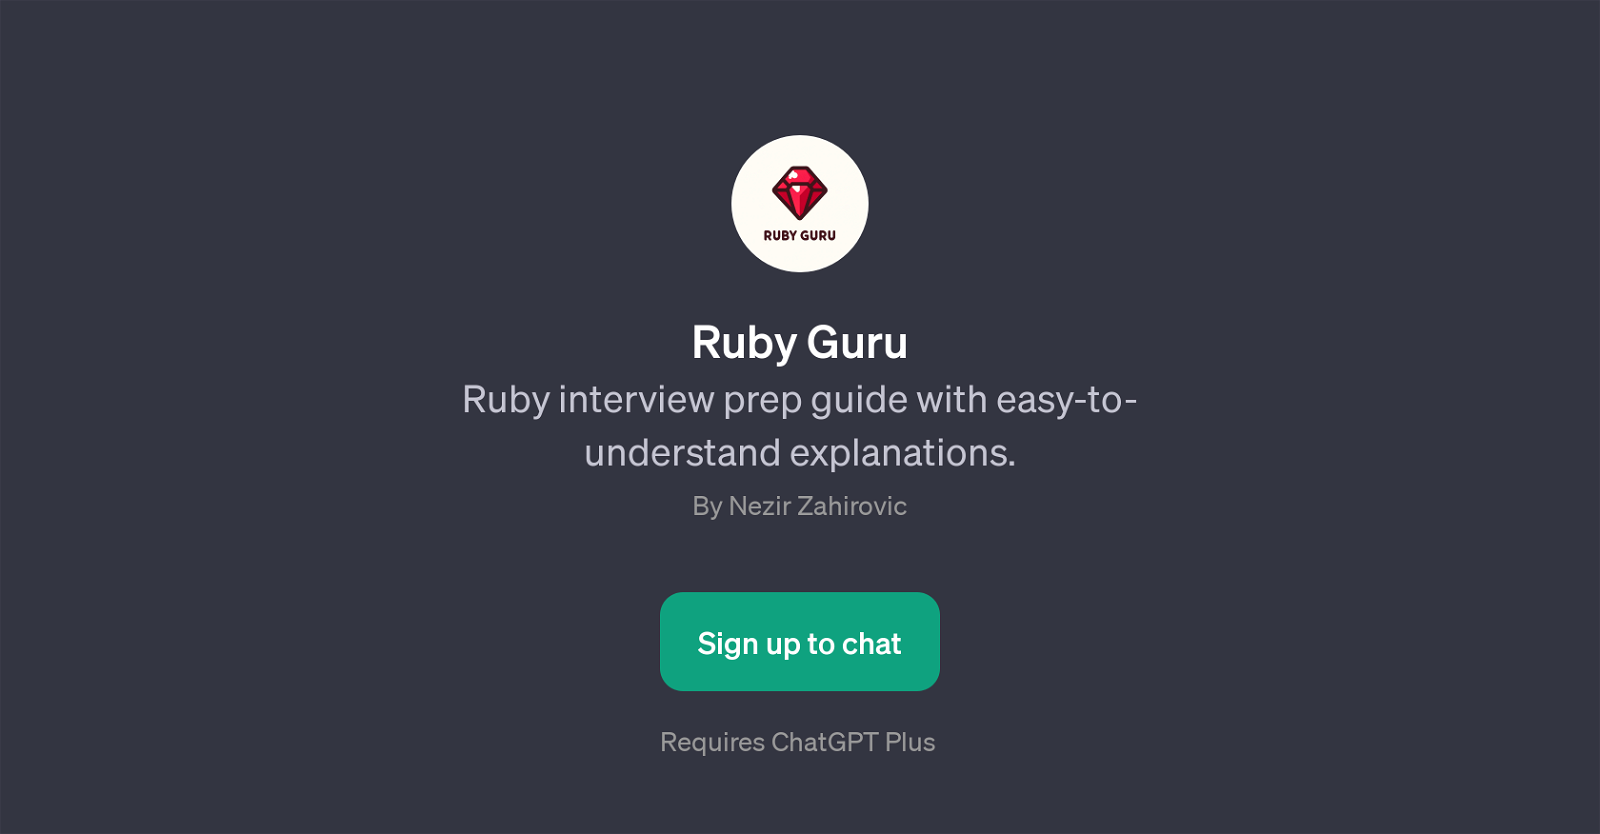 Ruby Guru website